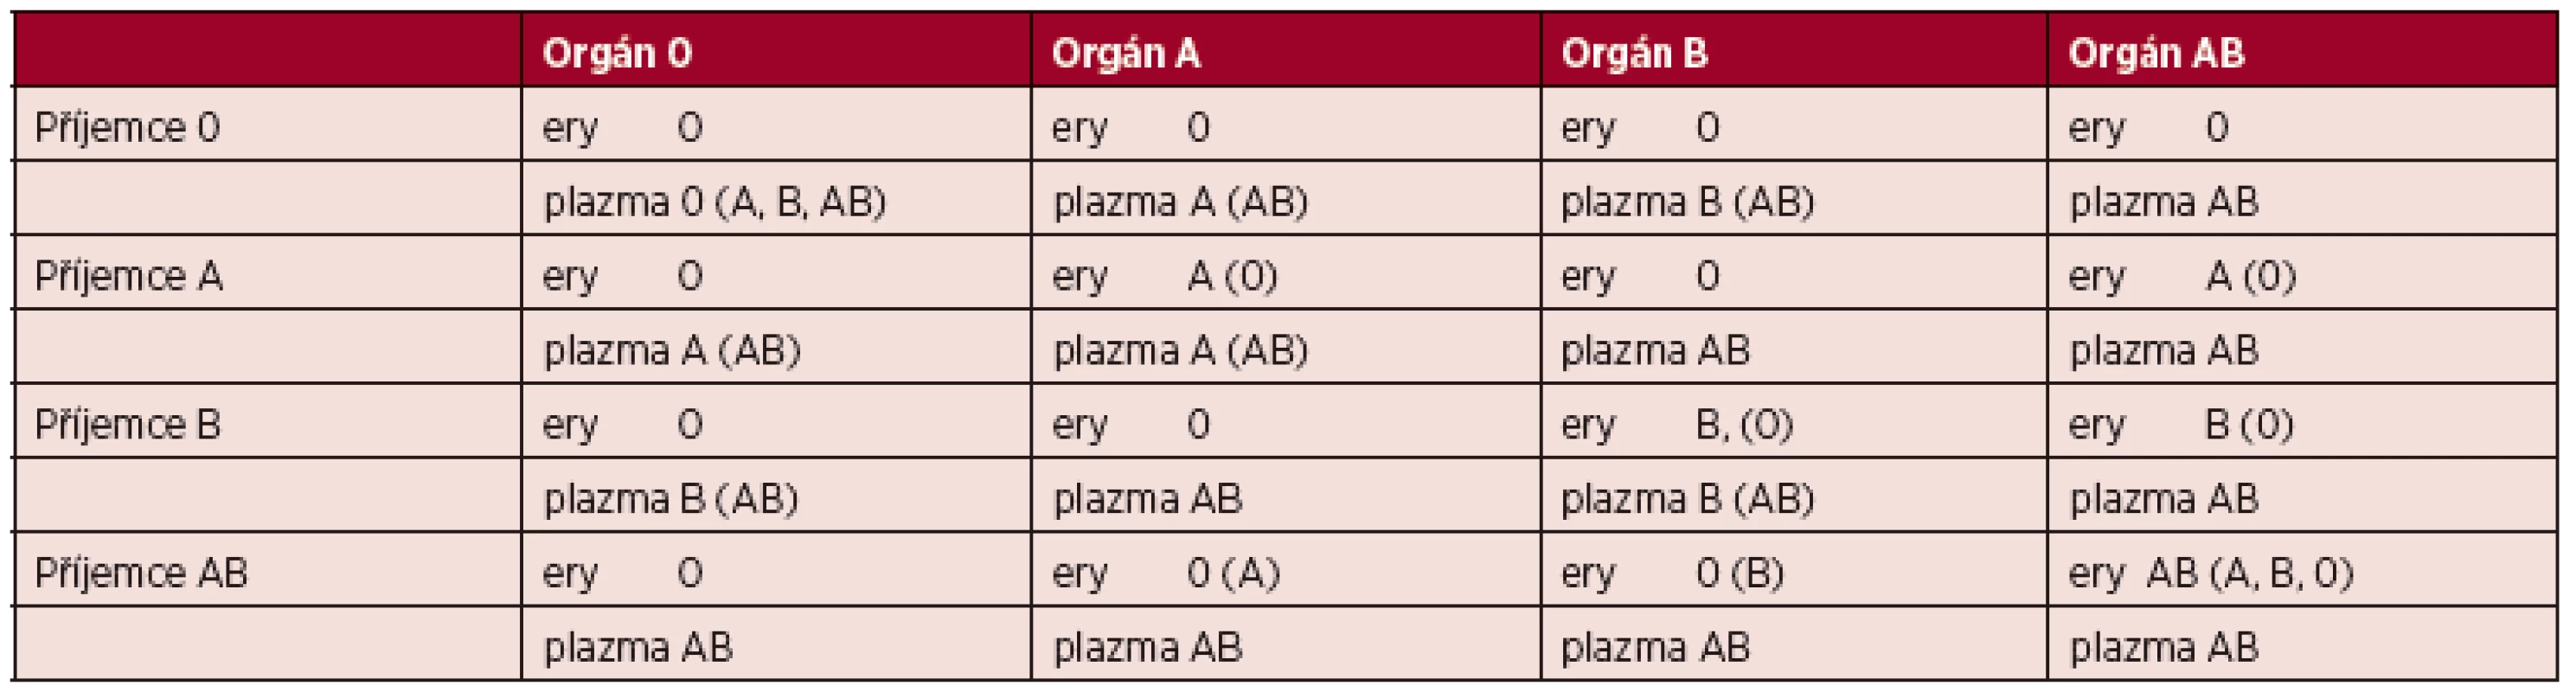 Výběr transfuzních přípravků při AB0 neshodné orgánové transplantaci